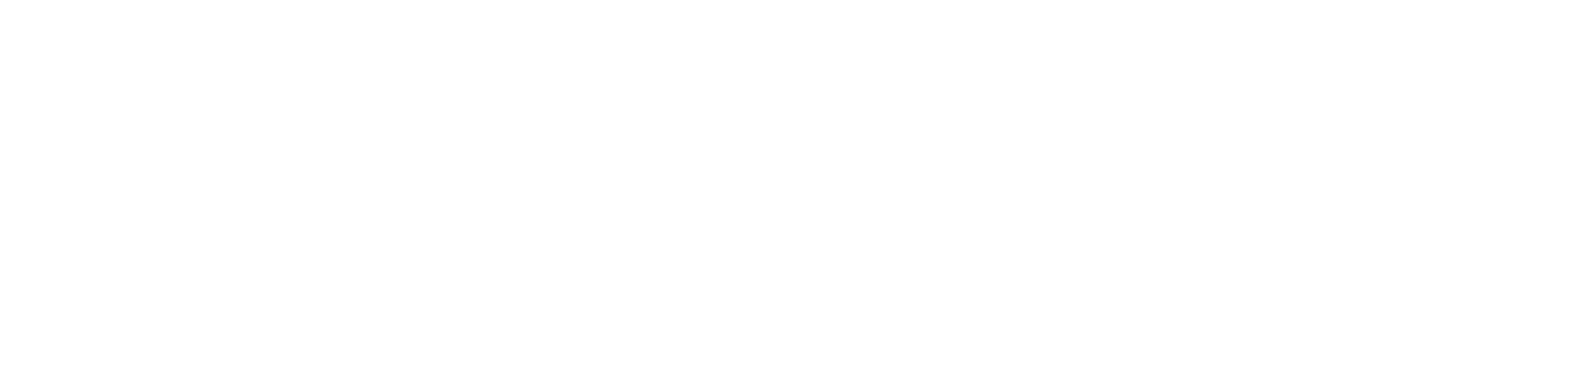 Holcim Group logo grand pour les fonds sombres (PNG transparent)